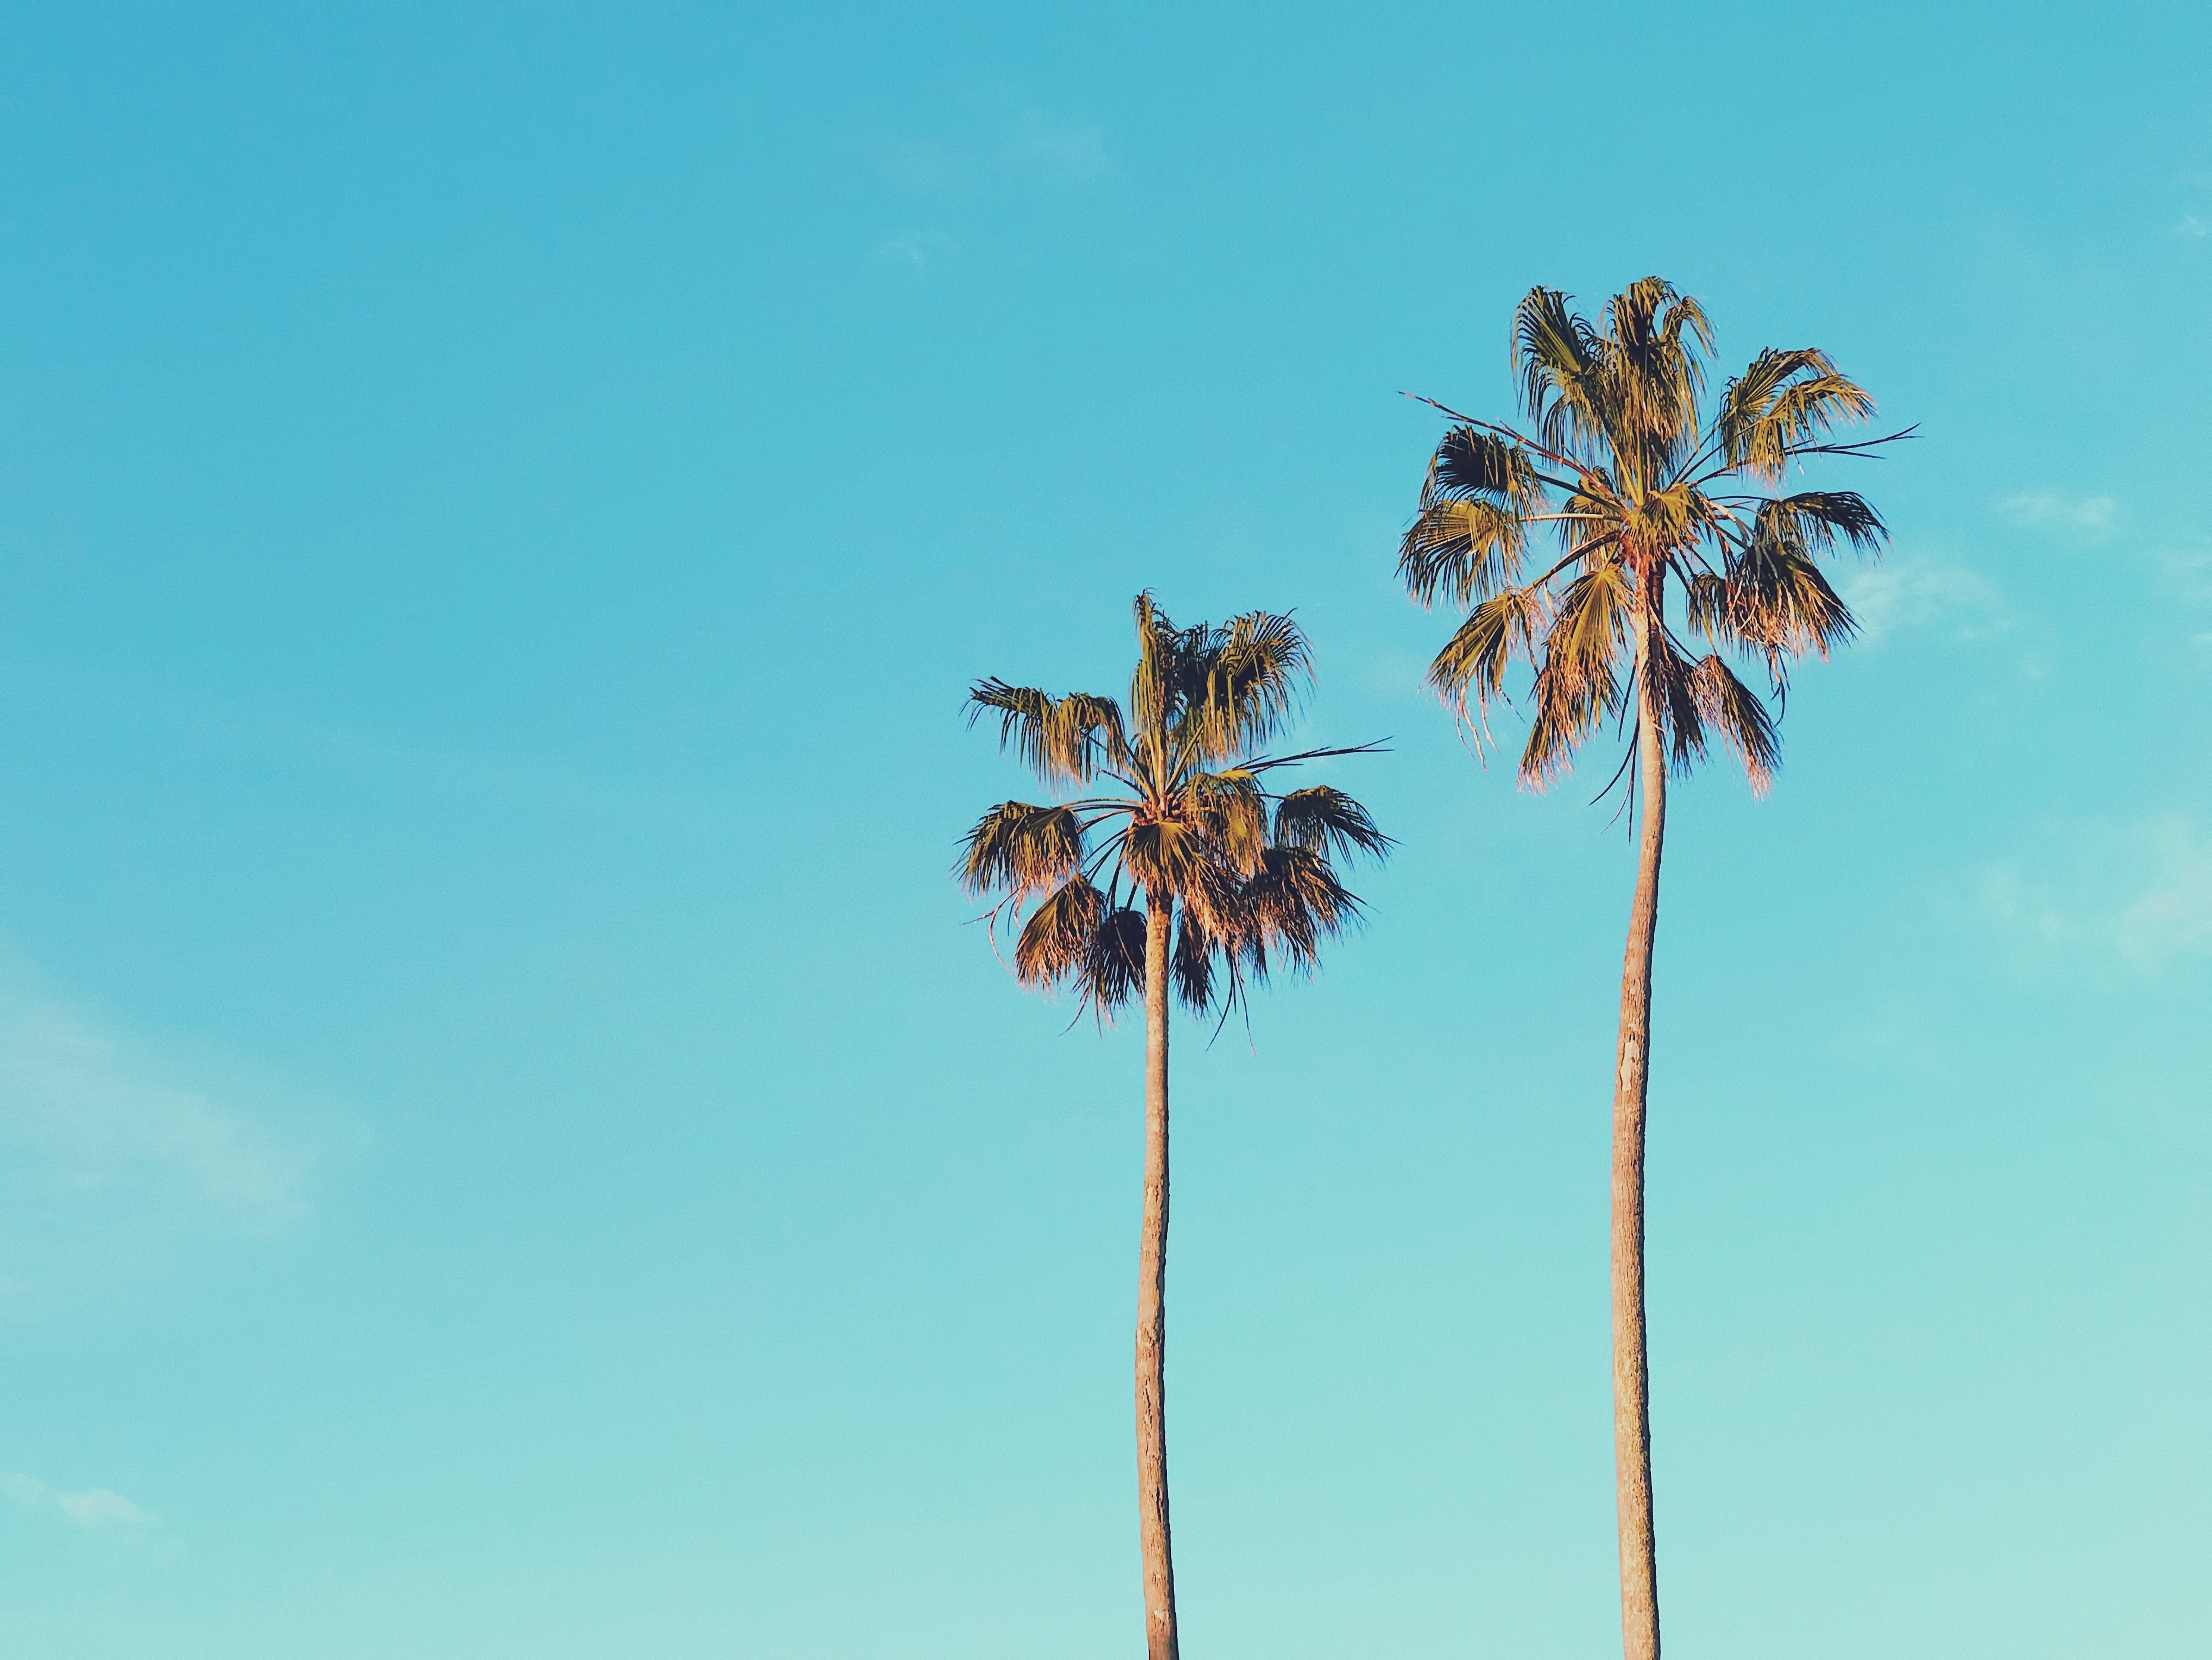 Zwei Palmen vor dem Hintergrund eines hellblauen Himmels.